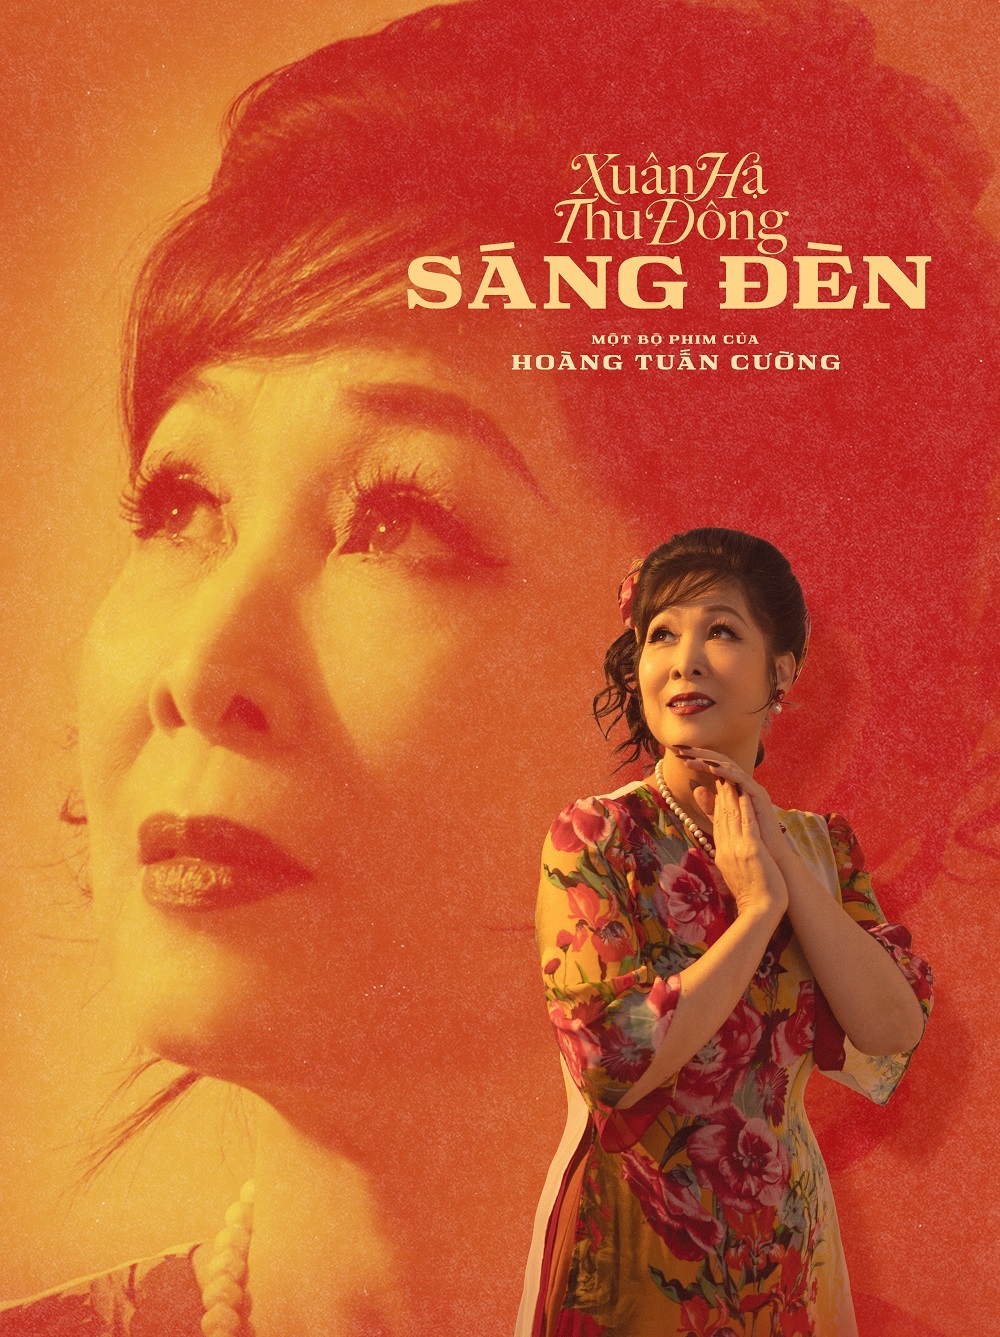 Phim điện ảnh "Sáng đèn" quy tụ dàn sao đình đám thuộc nhiều thế hệ trong showbiz Việt- Ảnh 4.